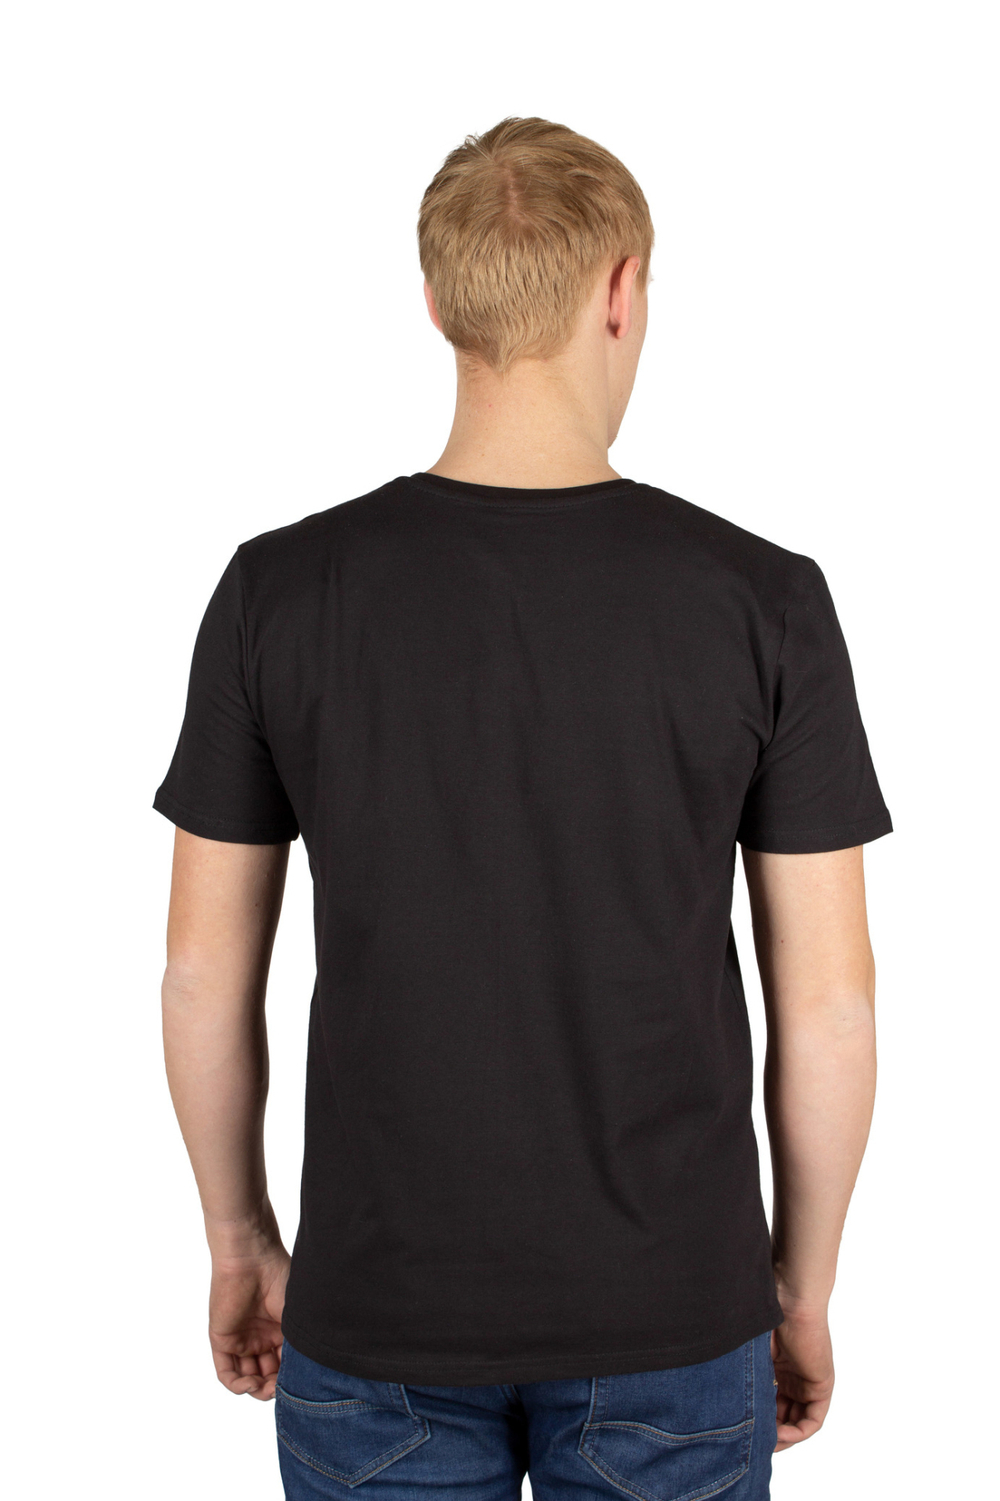 Д3477-7866 черный футболка мужская